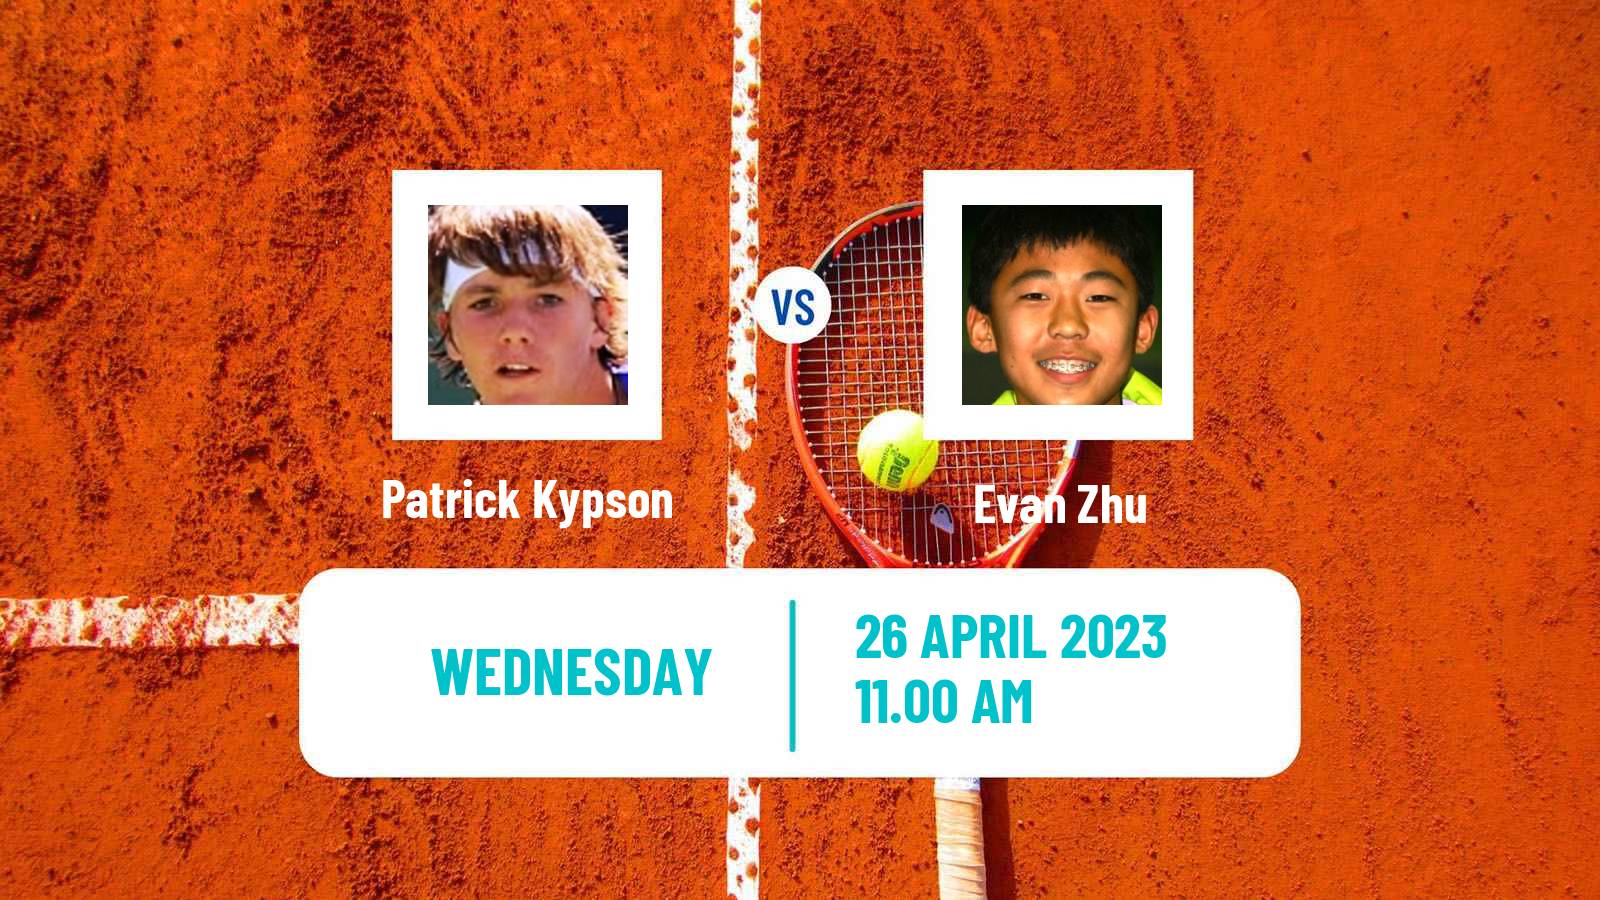 Tennis ATP Challenger Patrick Kypson - Evan Zhu